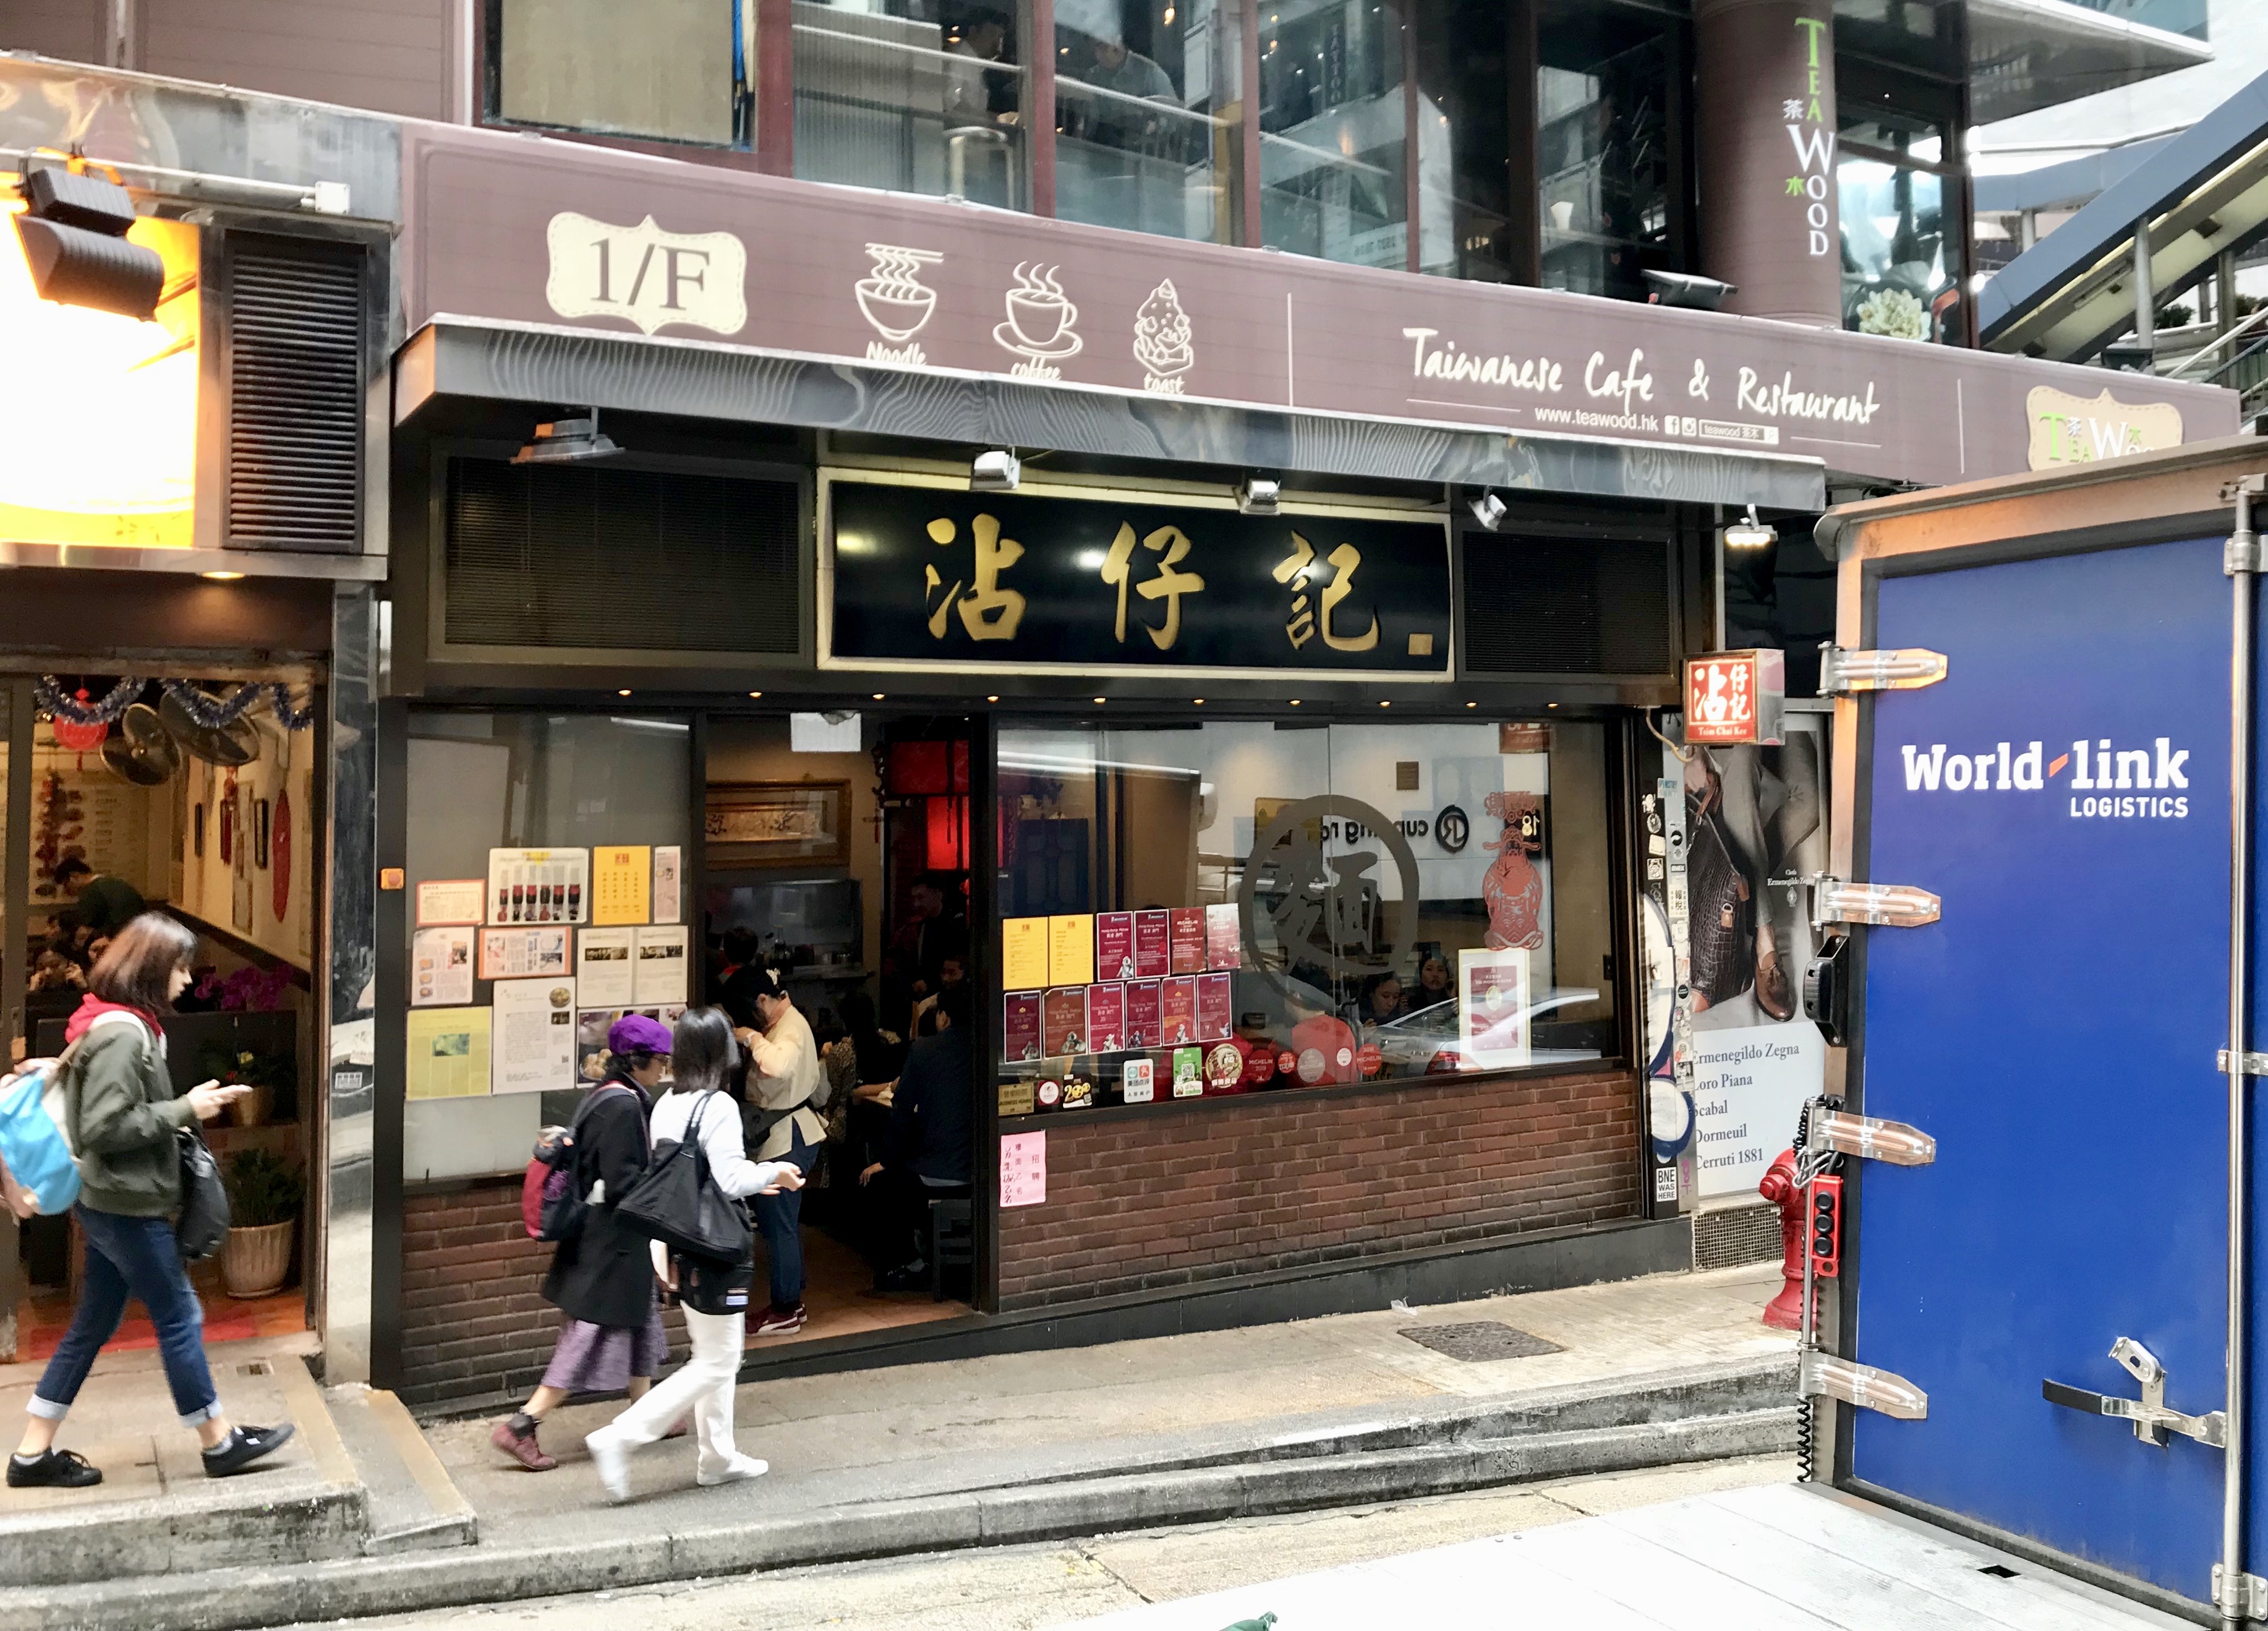 沾仔記 香港 中環のおすすめグルメ 海老ワンタン麺 ミシュランに掲載された人気店の行き方